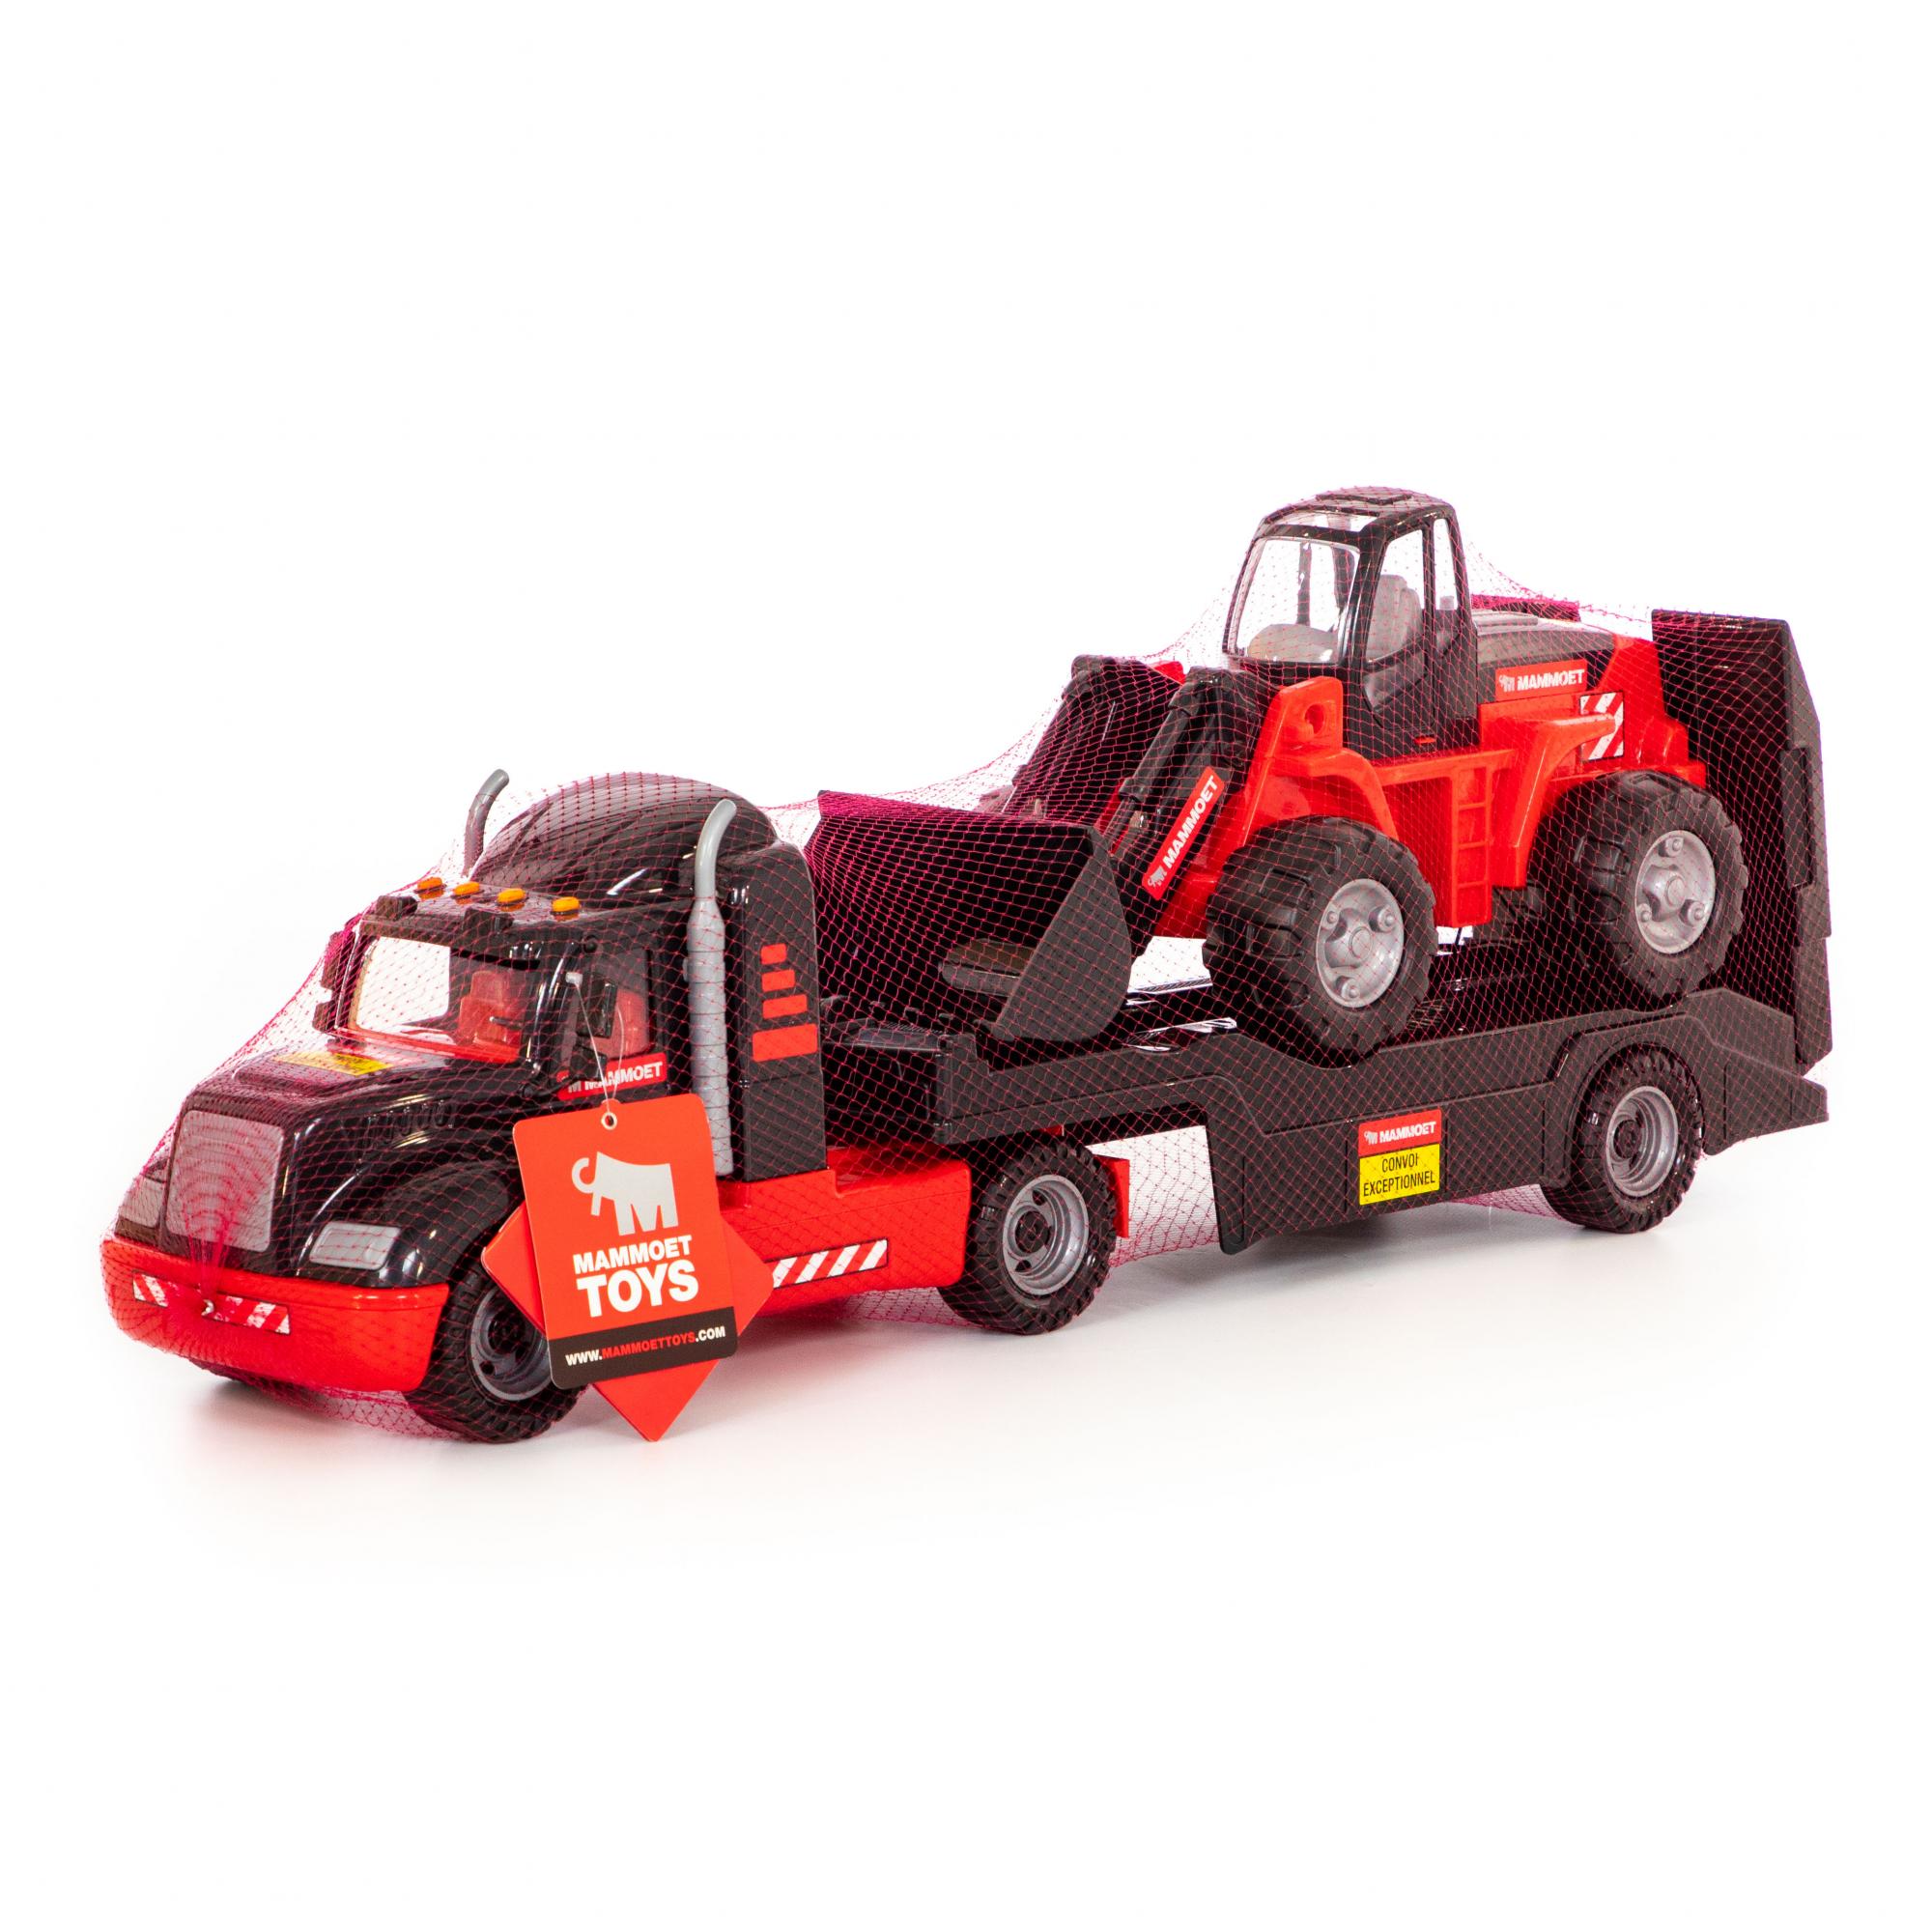 Автомобиль-трейлер Mammoet Toys и трактор-погрузчик  